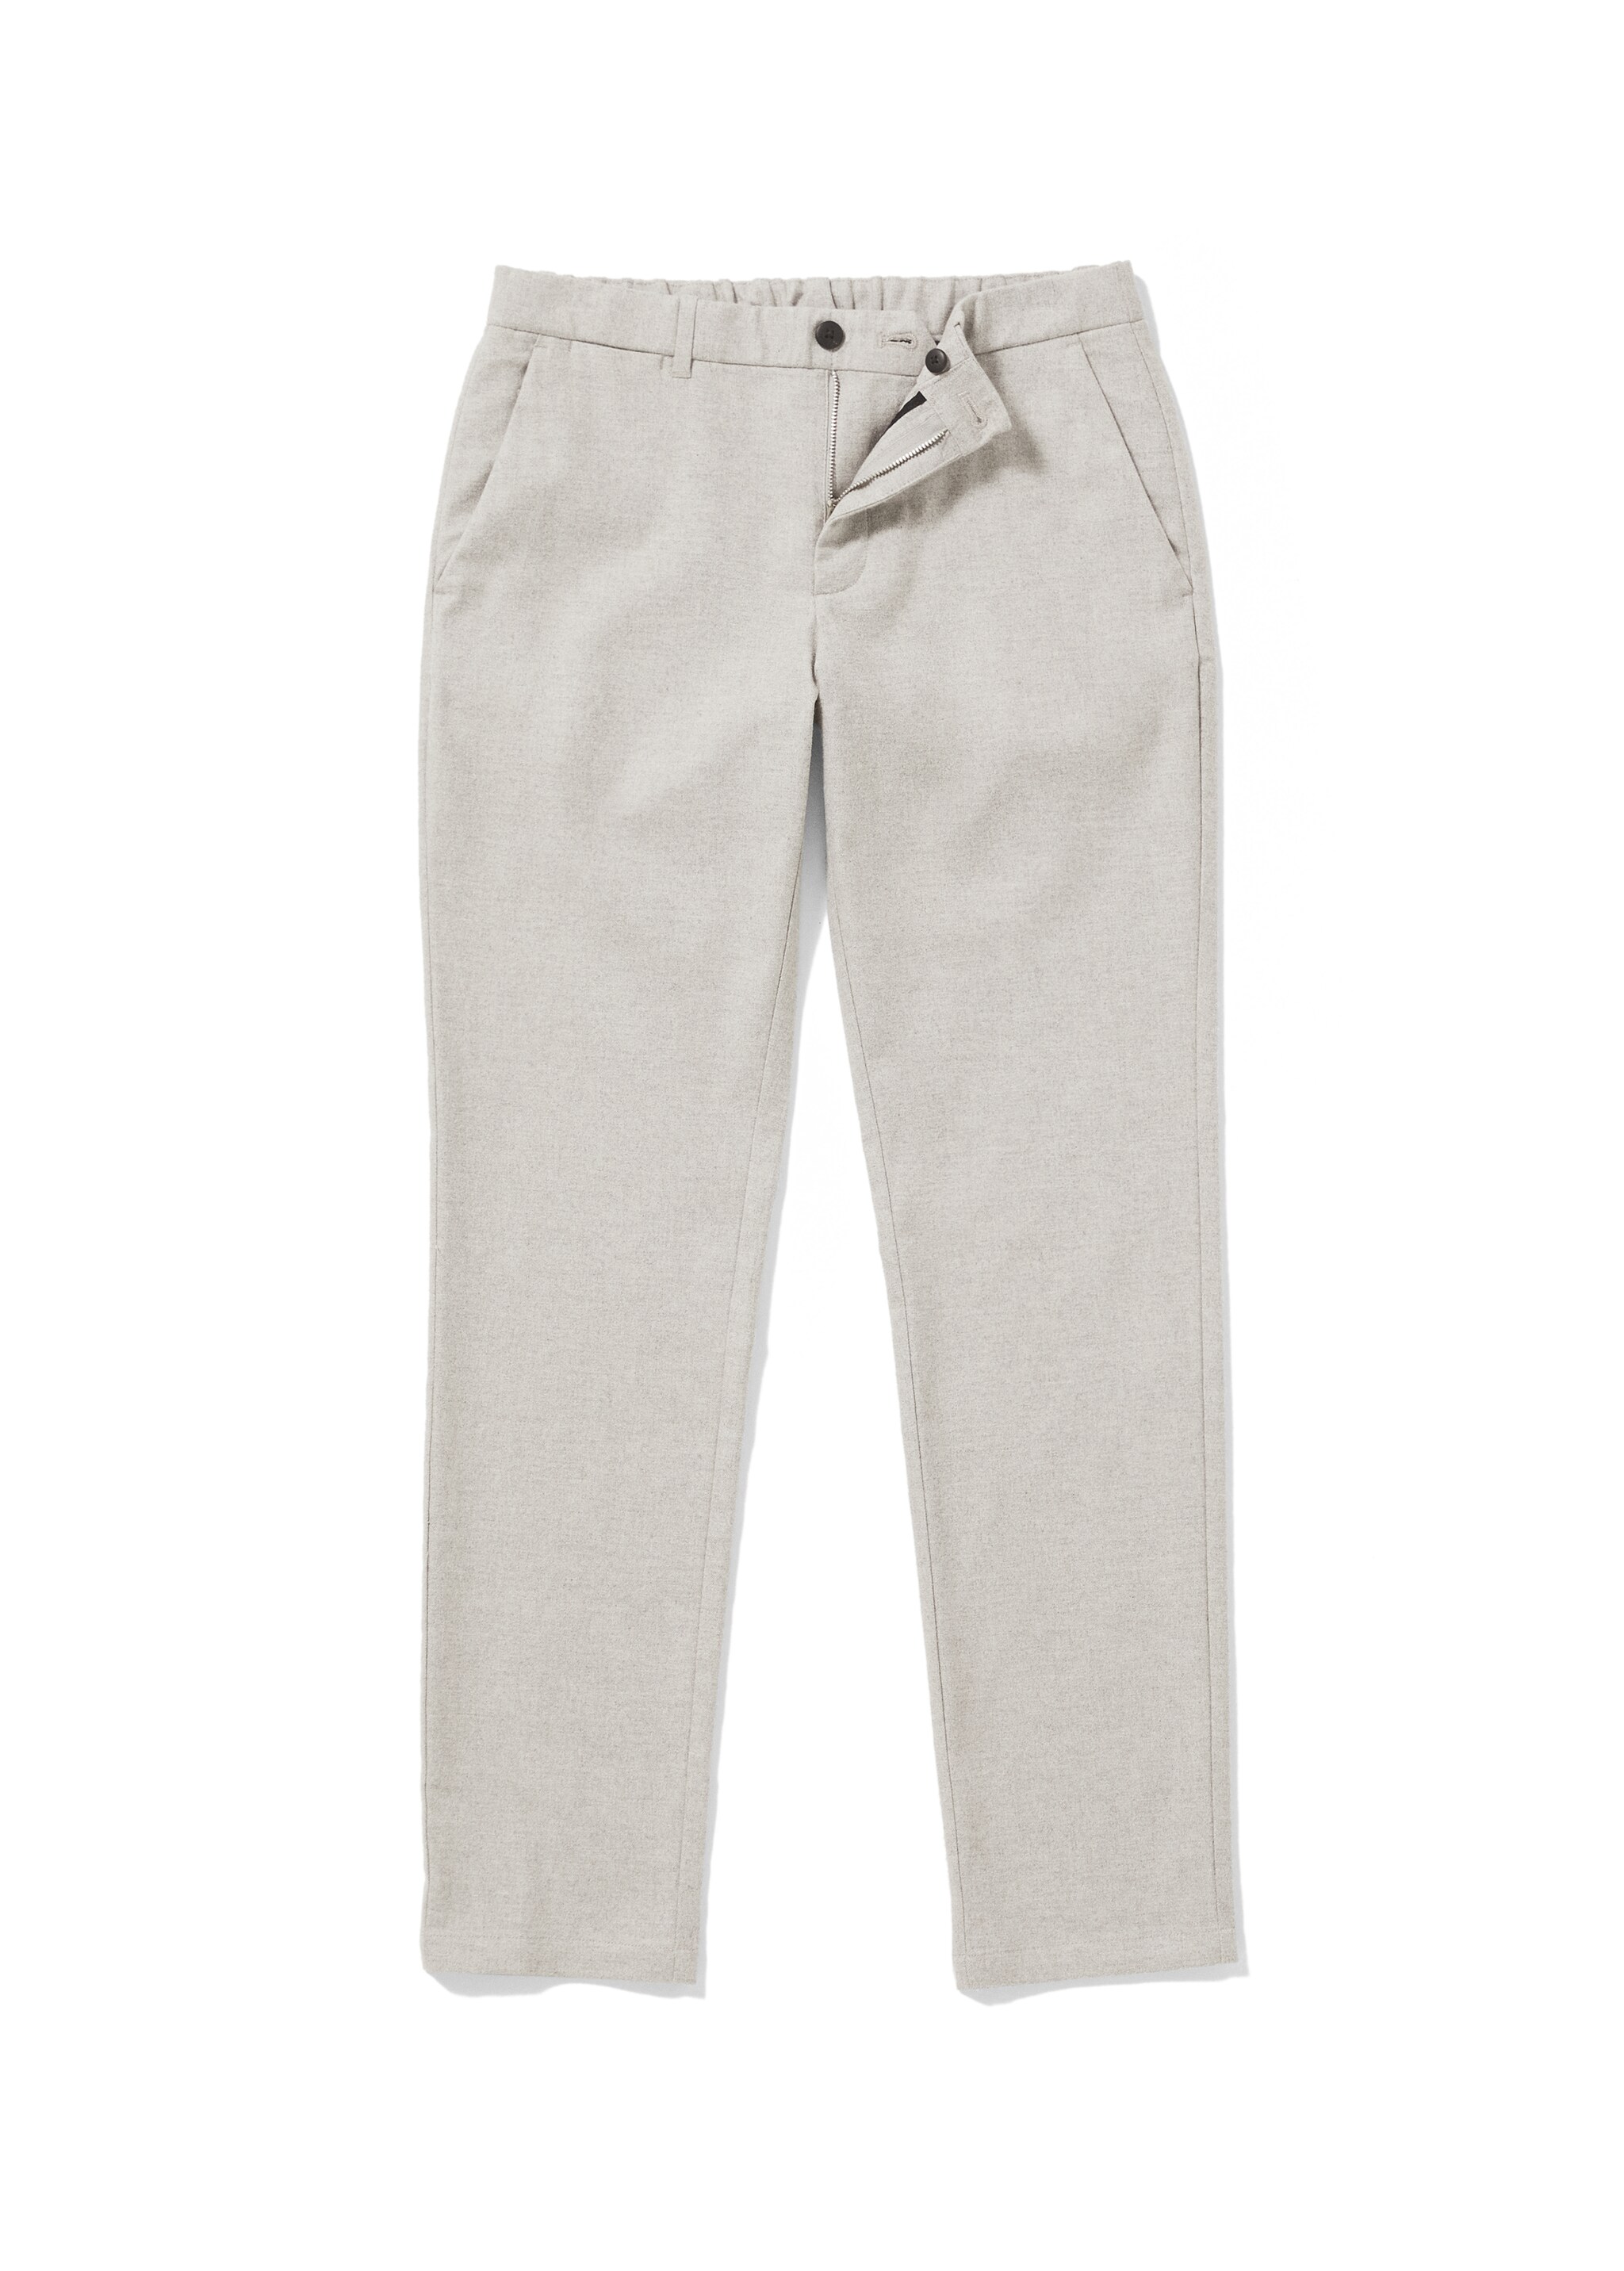 Pantalón slim fit algodón - Detalle del artículo 9